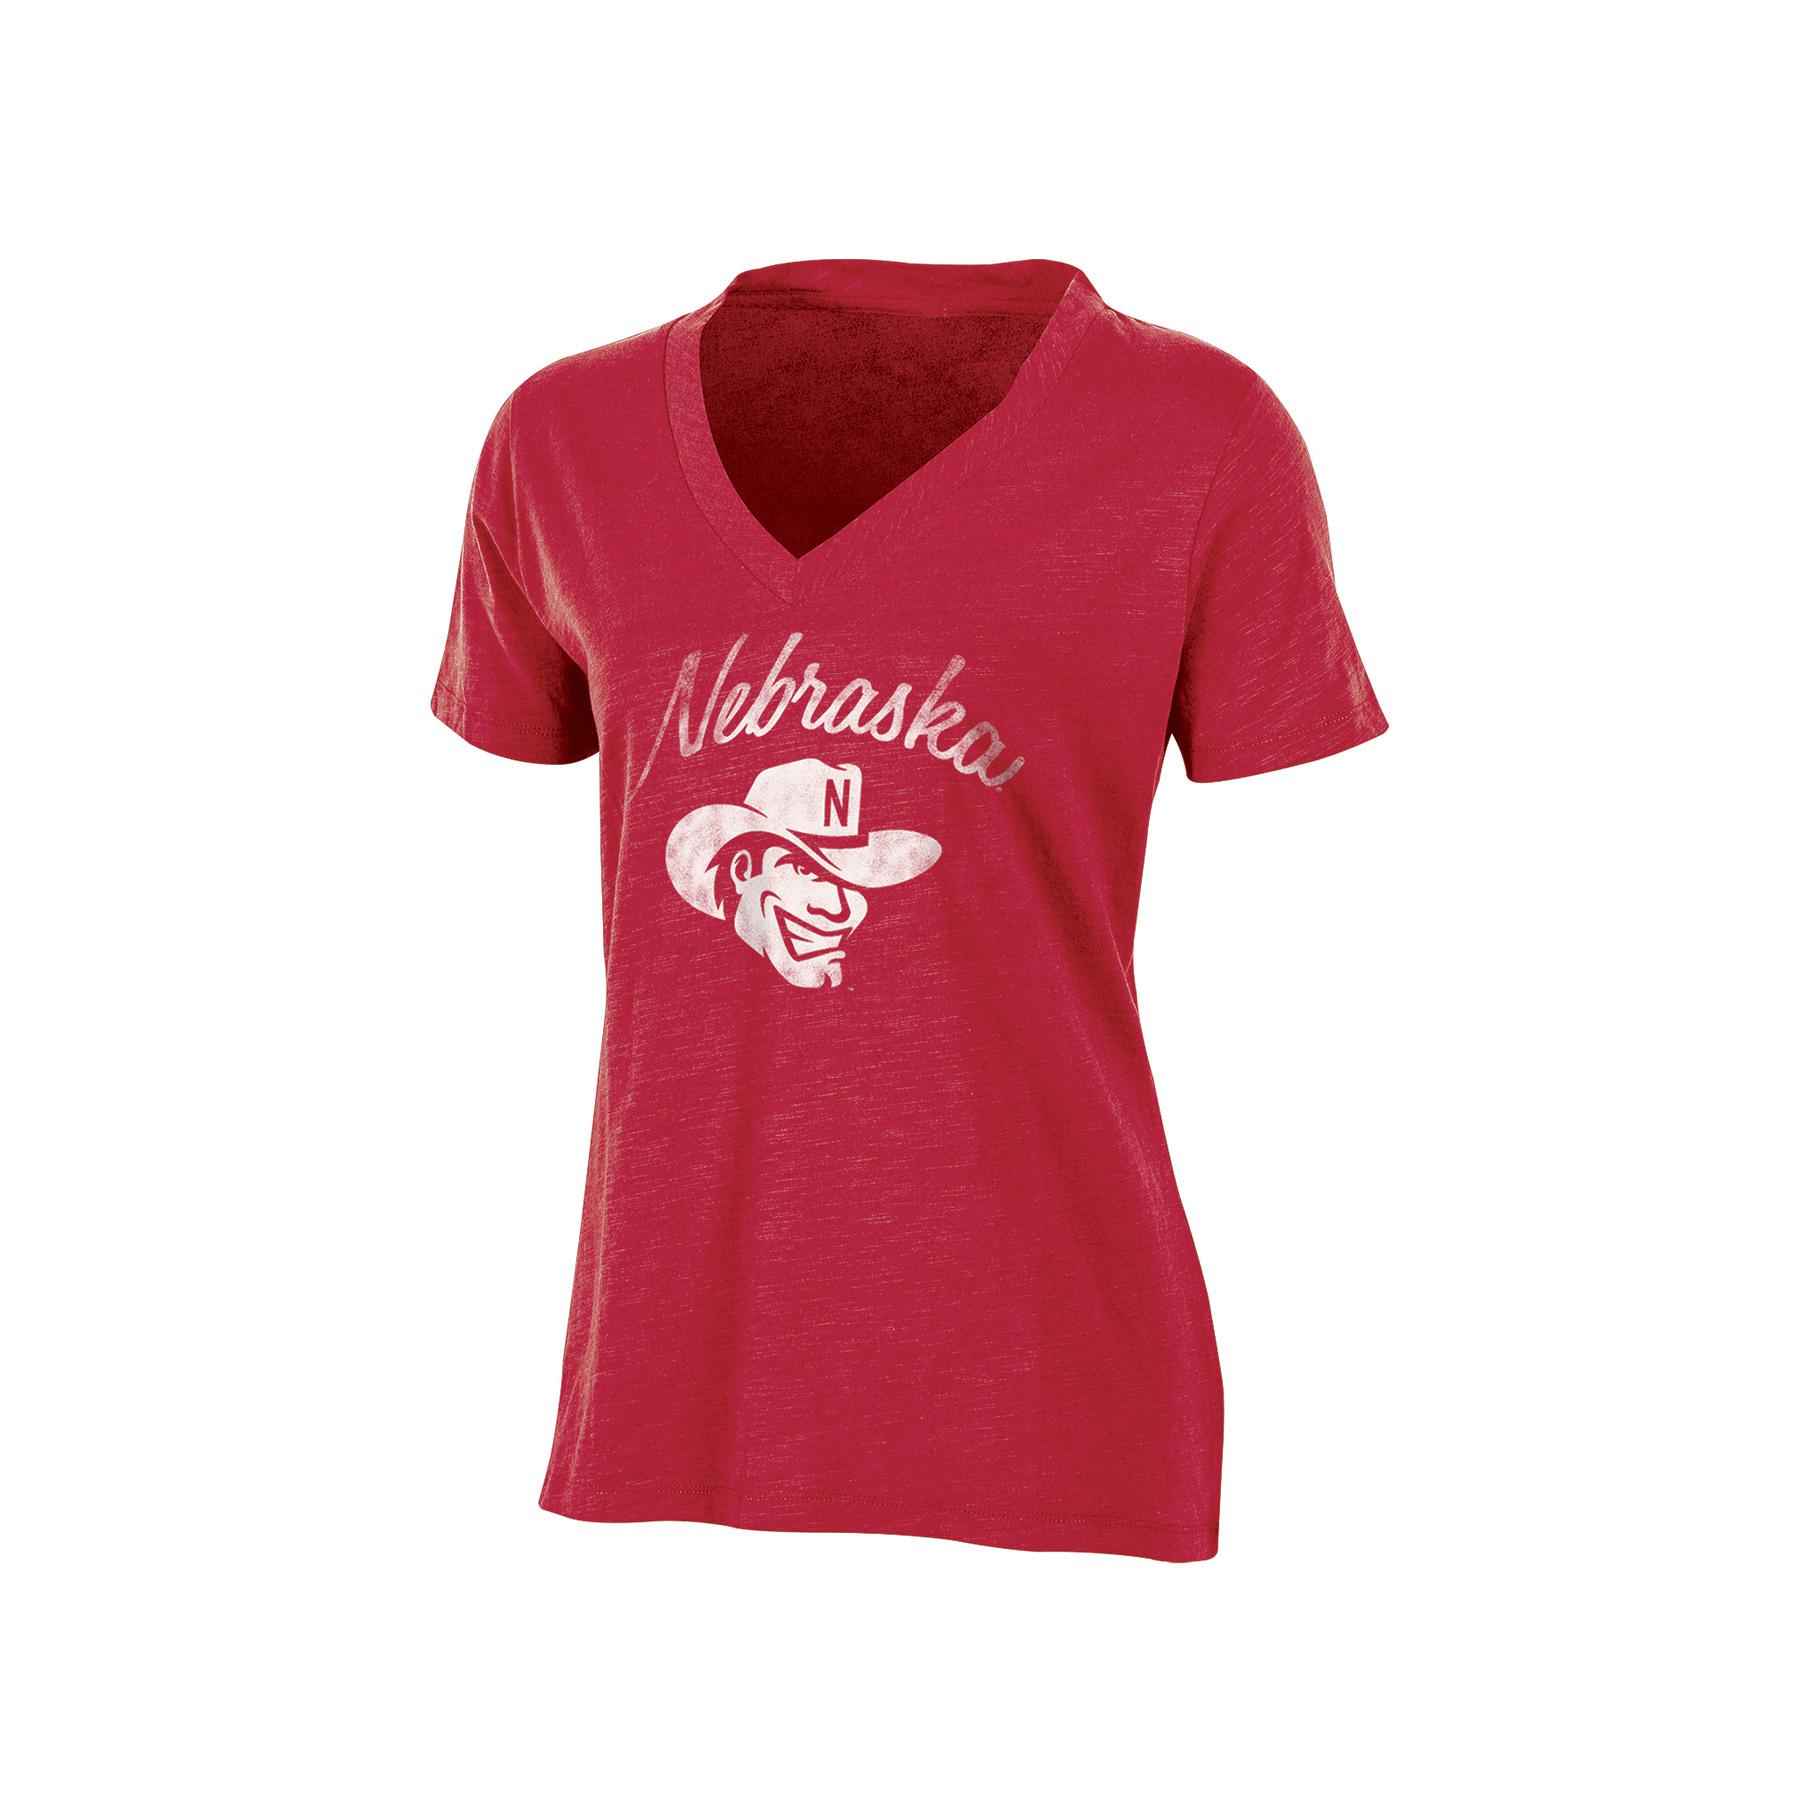 NCAA Women's Graphic T-Shirt - Nebraska Cornhuskers